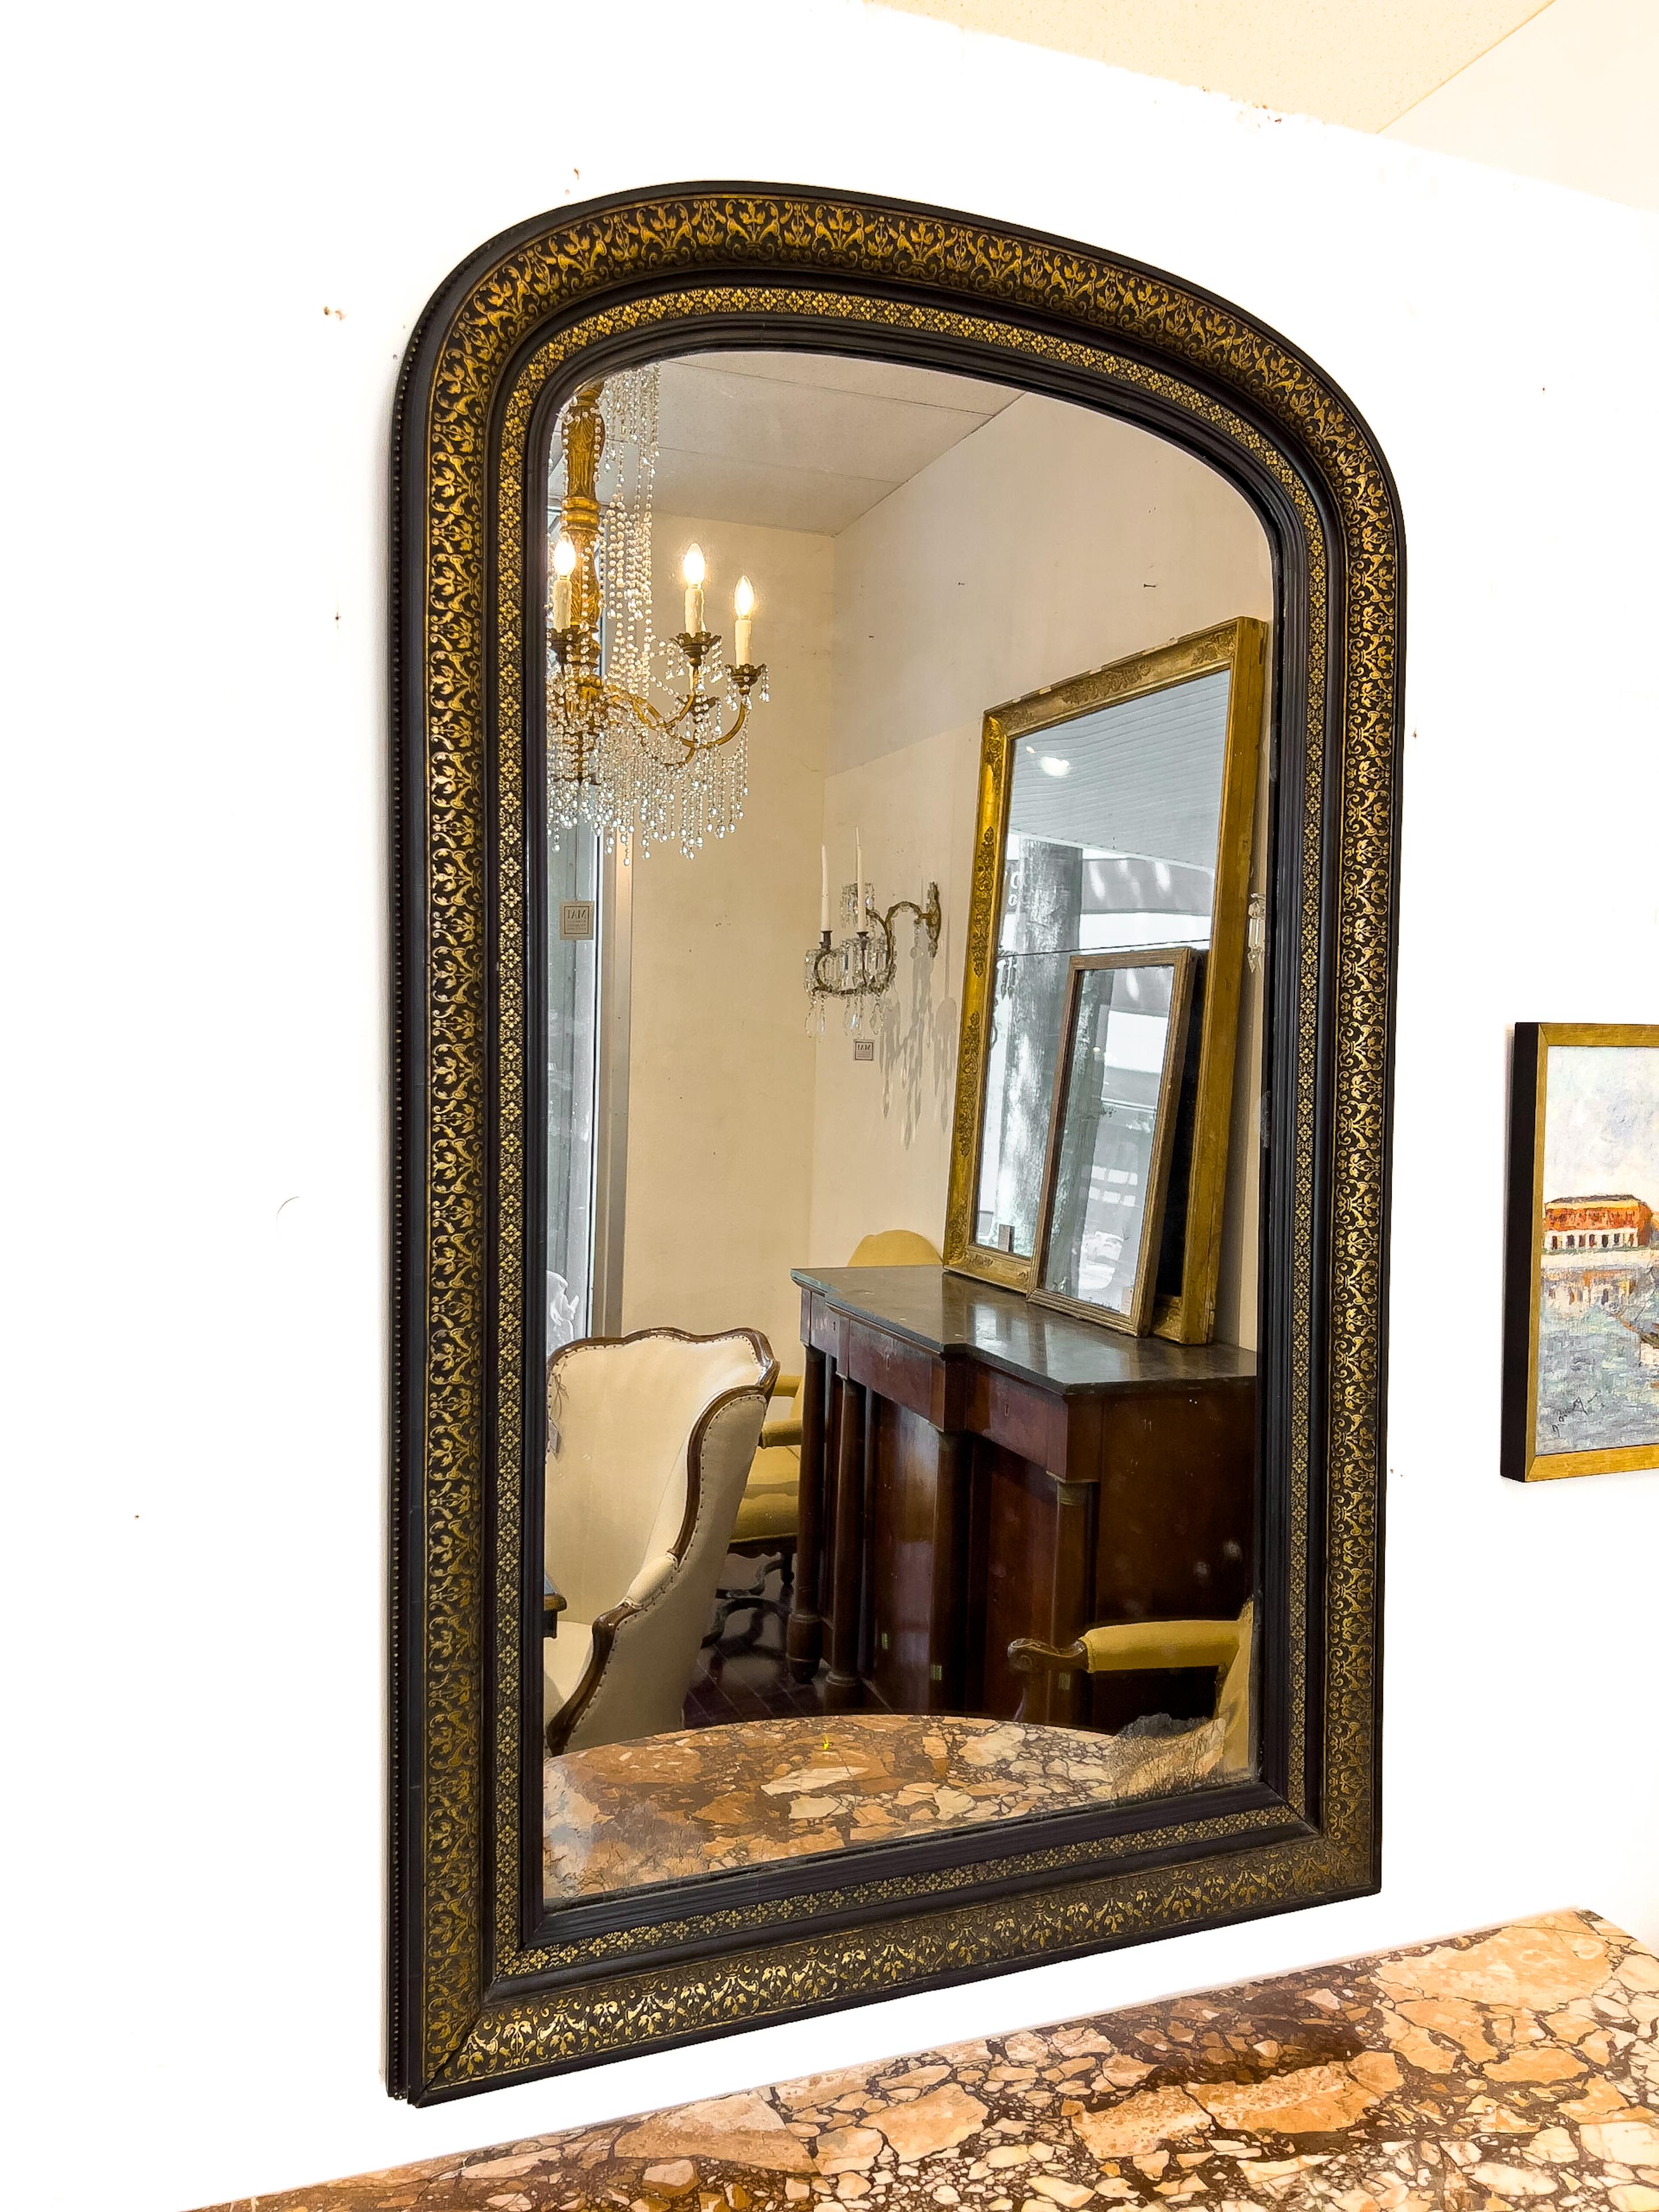 miroir Napoléon III du XIXe siècle à décor noir et doré. Il possède le miroir d'origine qui présente des inclusions sombres et un aspect brumeux.